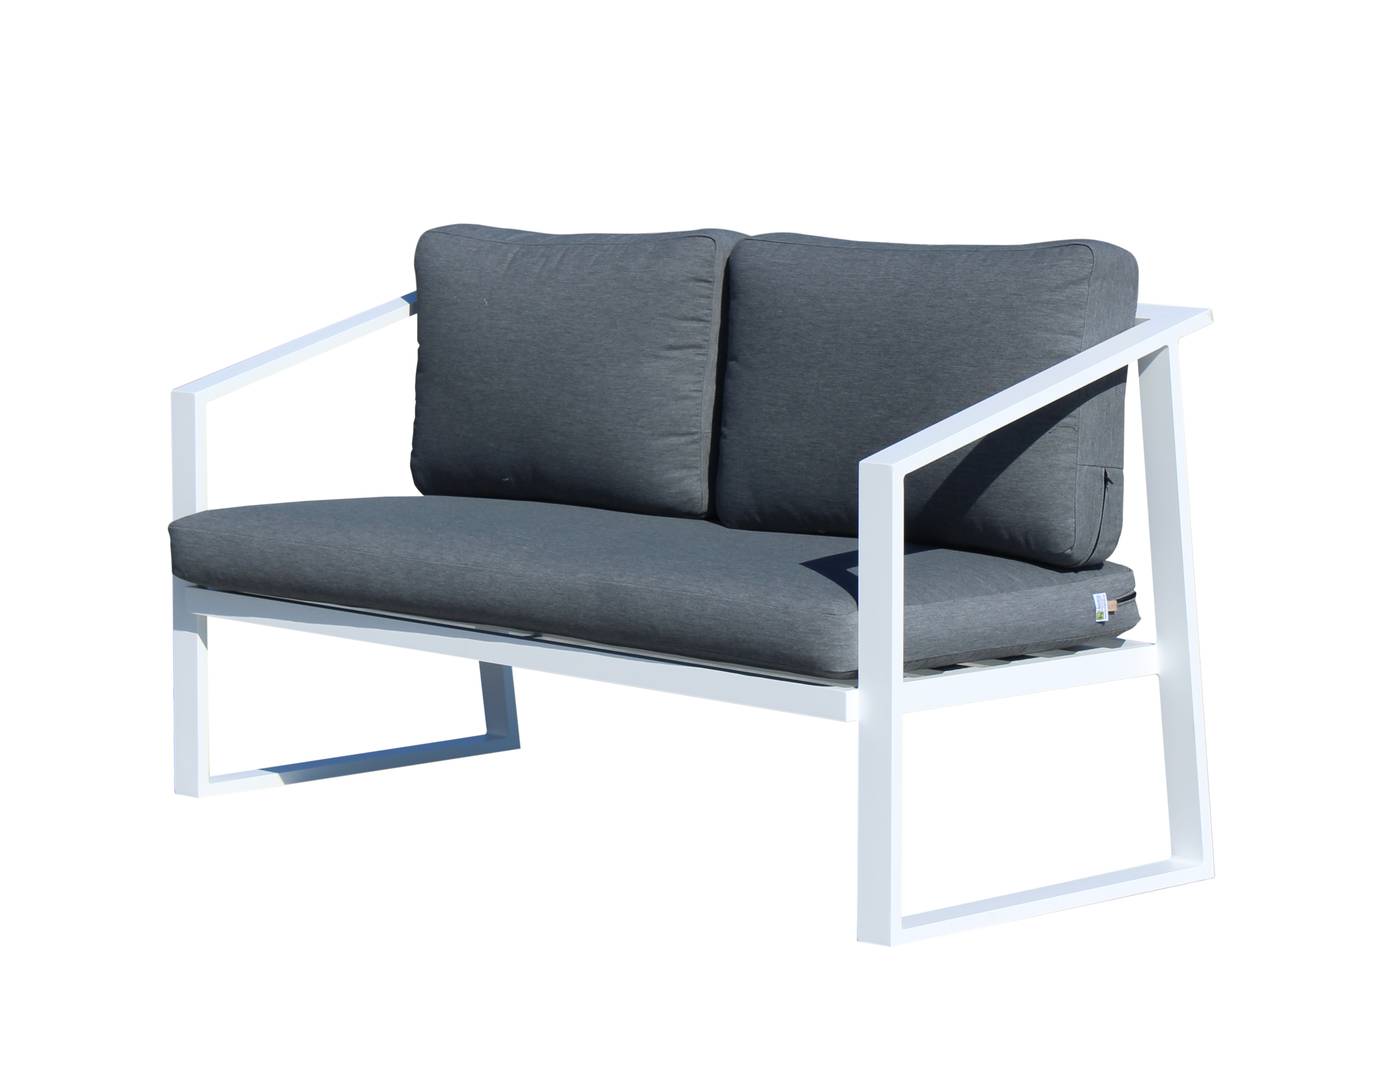 Sofá relax 2 plazas para exterior. Fabricado de aluminio en color blanco o antracita.